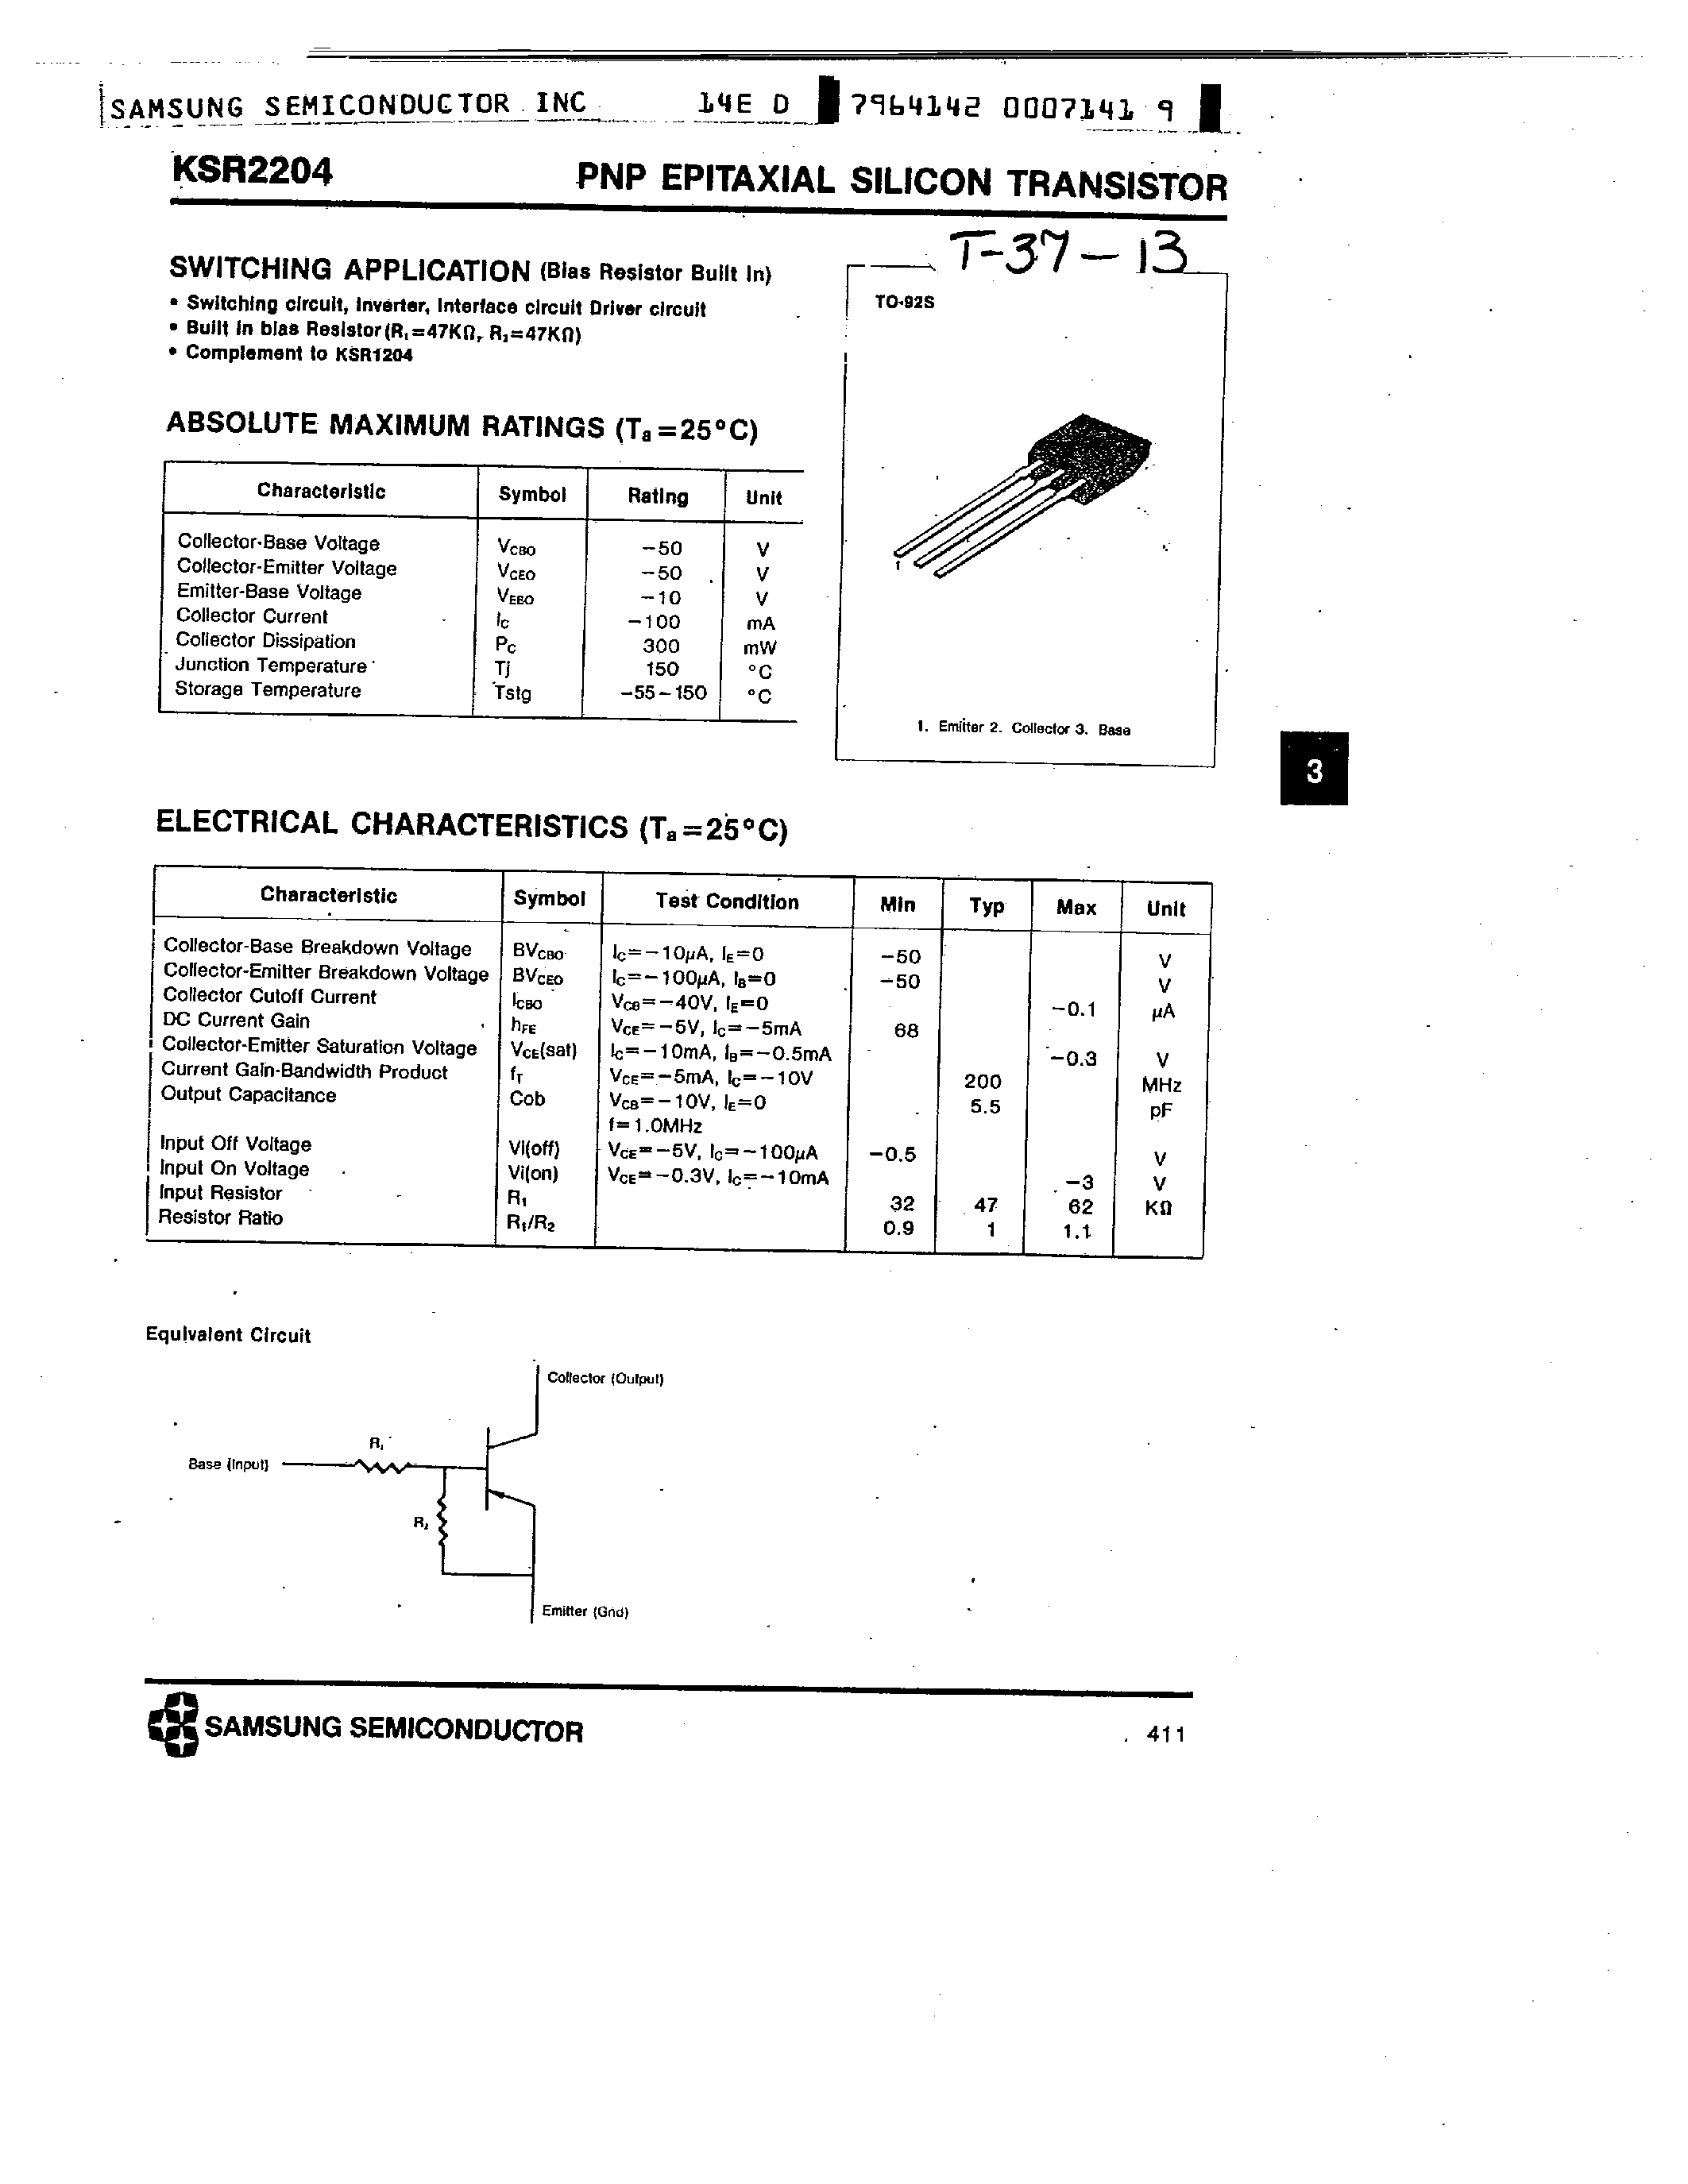 Datasheet KSR2204 - PNP (SWITCHING APPLICATION) page 1